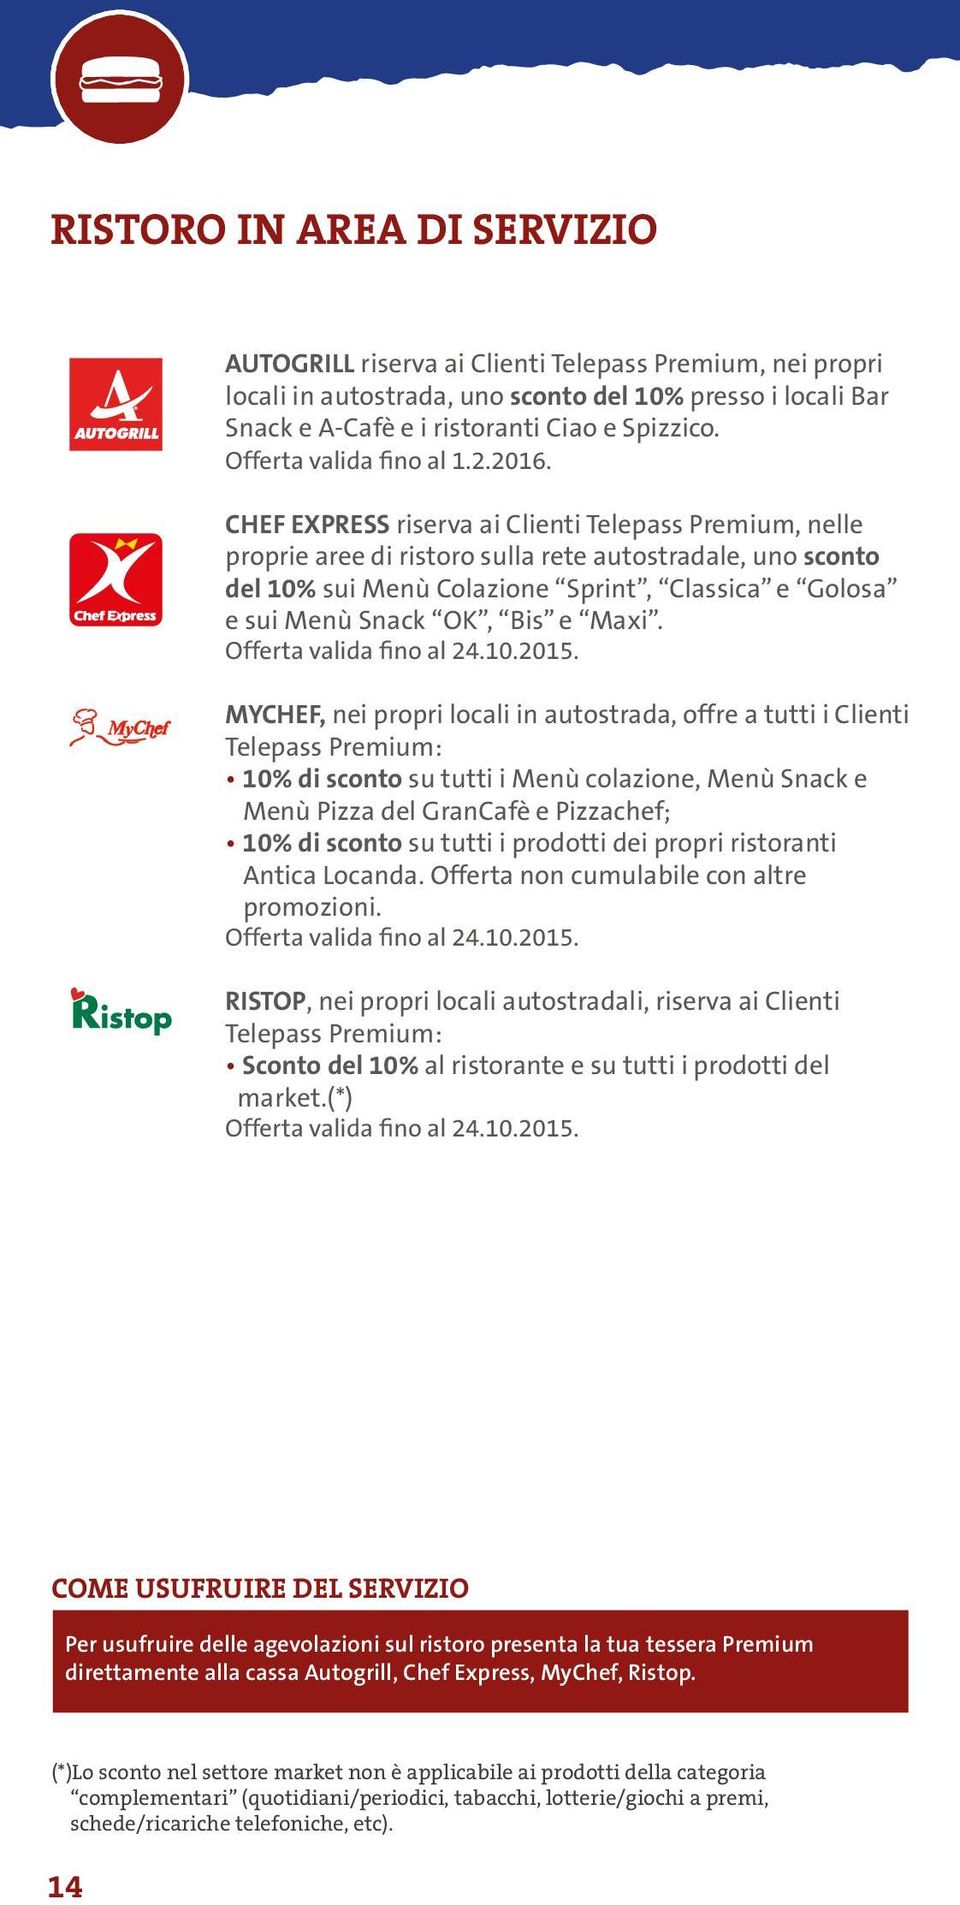 CHEF EXPRESS riserva ai Clienti Telepass Premium, nelle proprie aree di ristoro sulla rete autostradale, uno sconto del 10% sui Menù Colazione Sprint, Classica e Golosa e sui Menù Snack OK, Bis e